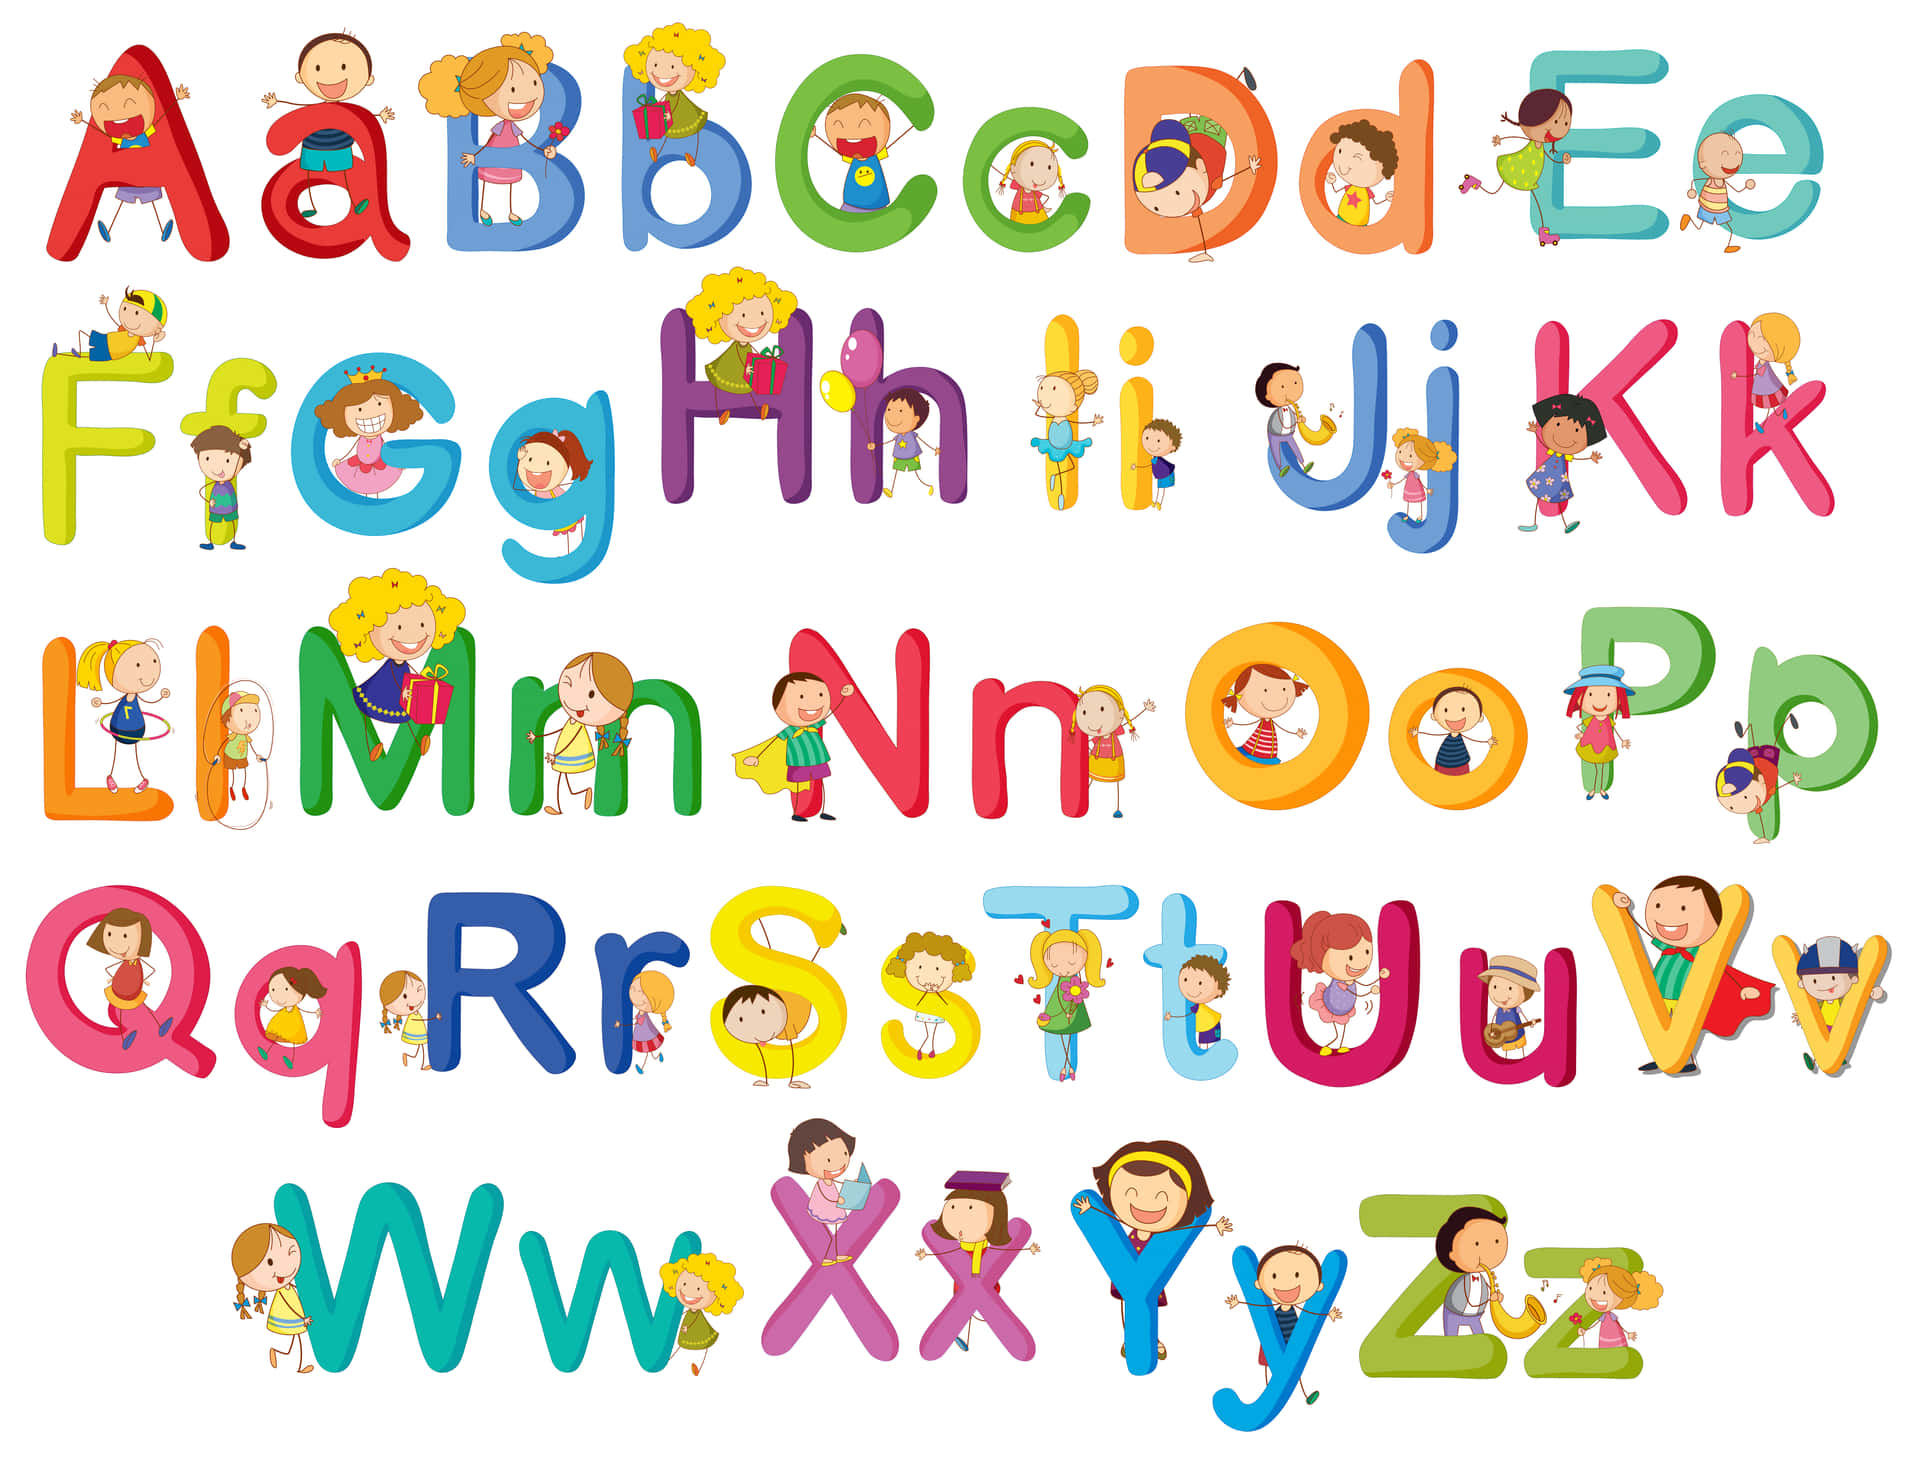 Alphabet, the parent company of Google